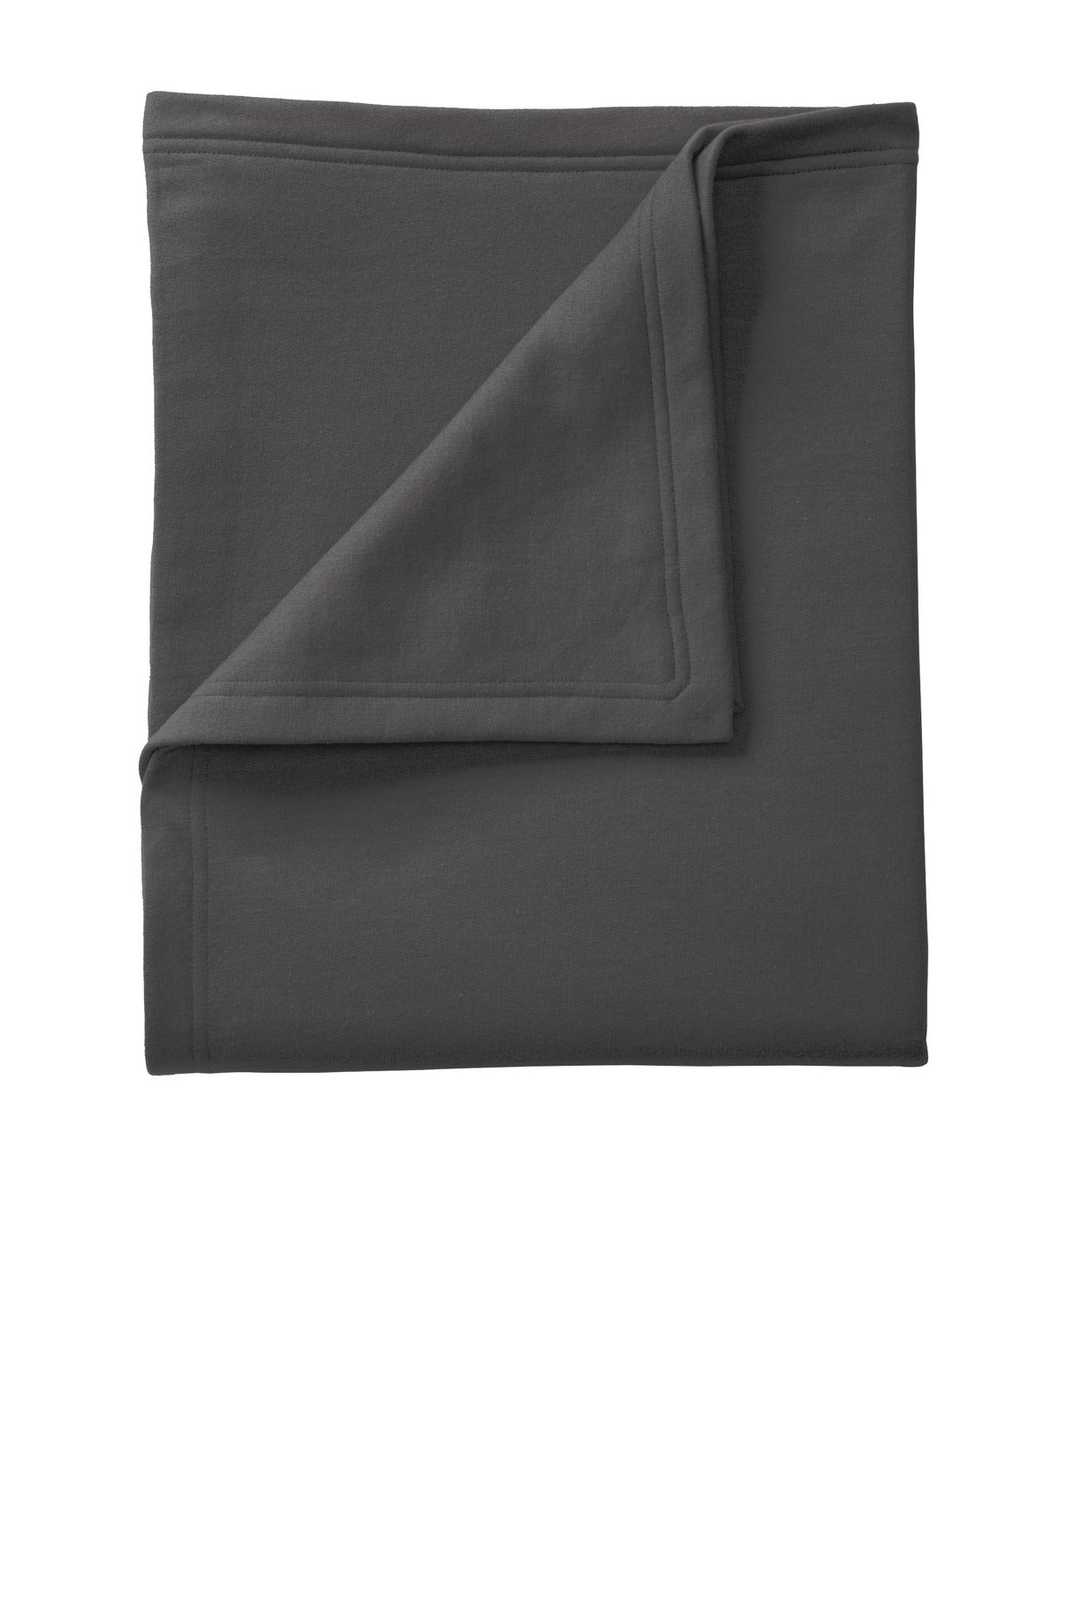 Port & Company BP78 Core Fleece Sweatshirt Blanket - Charcoal - HIT a Double - 1